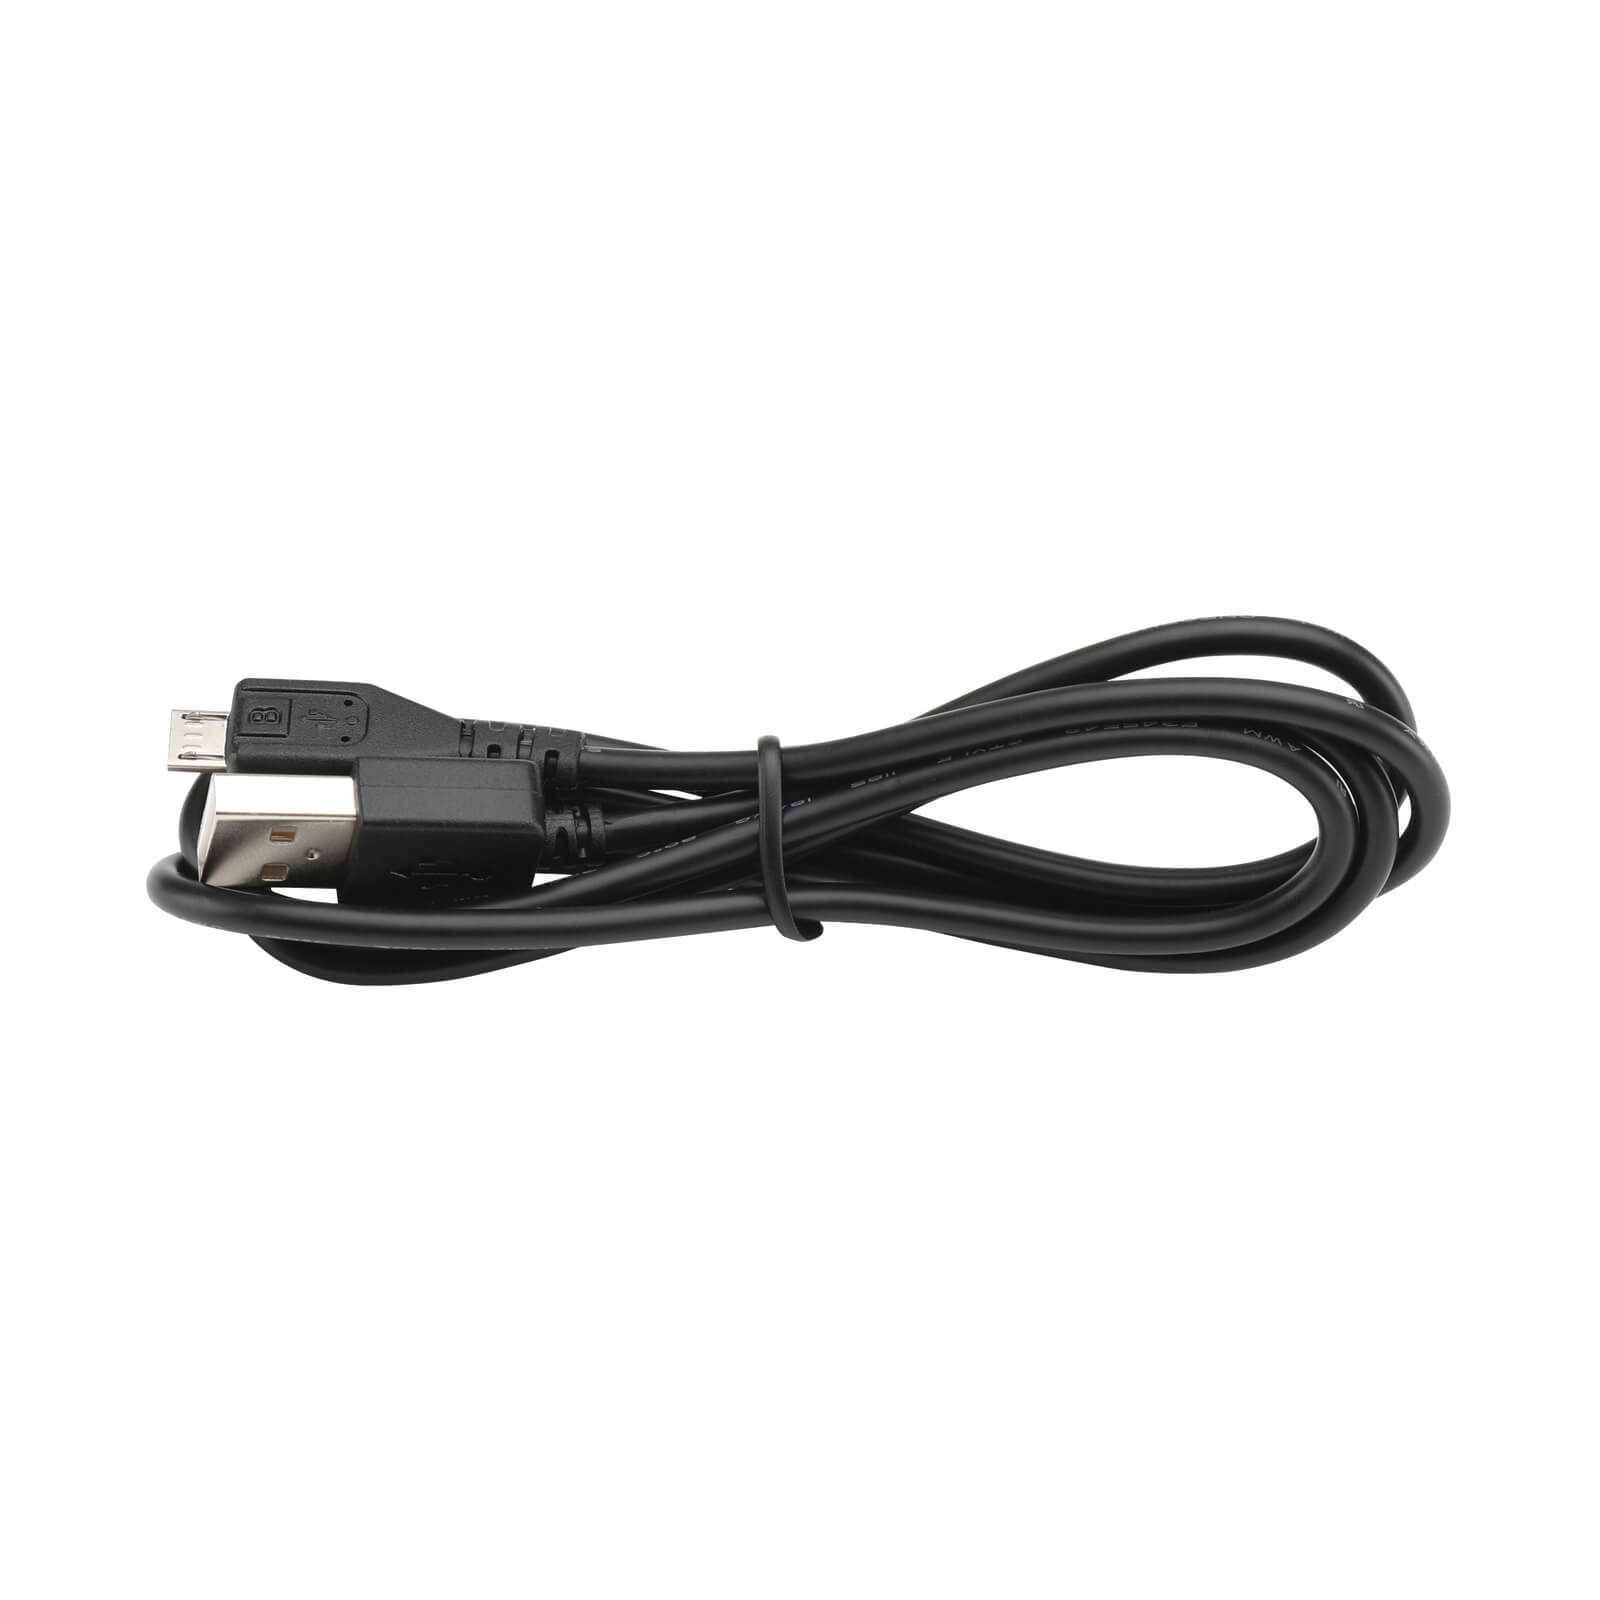 BLACK+DECKER 12V 1.5AH USB Battery with charging cable (BDCB12B-XJ)